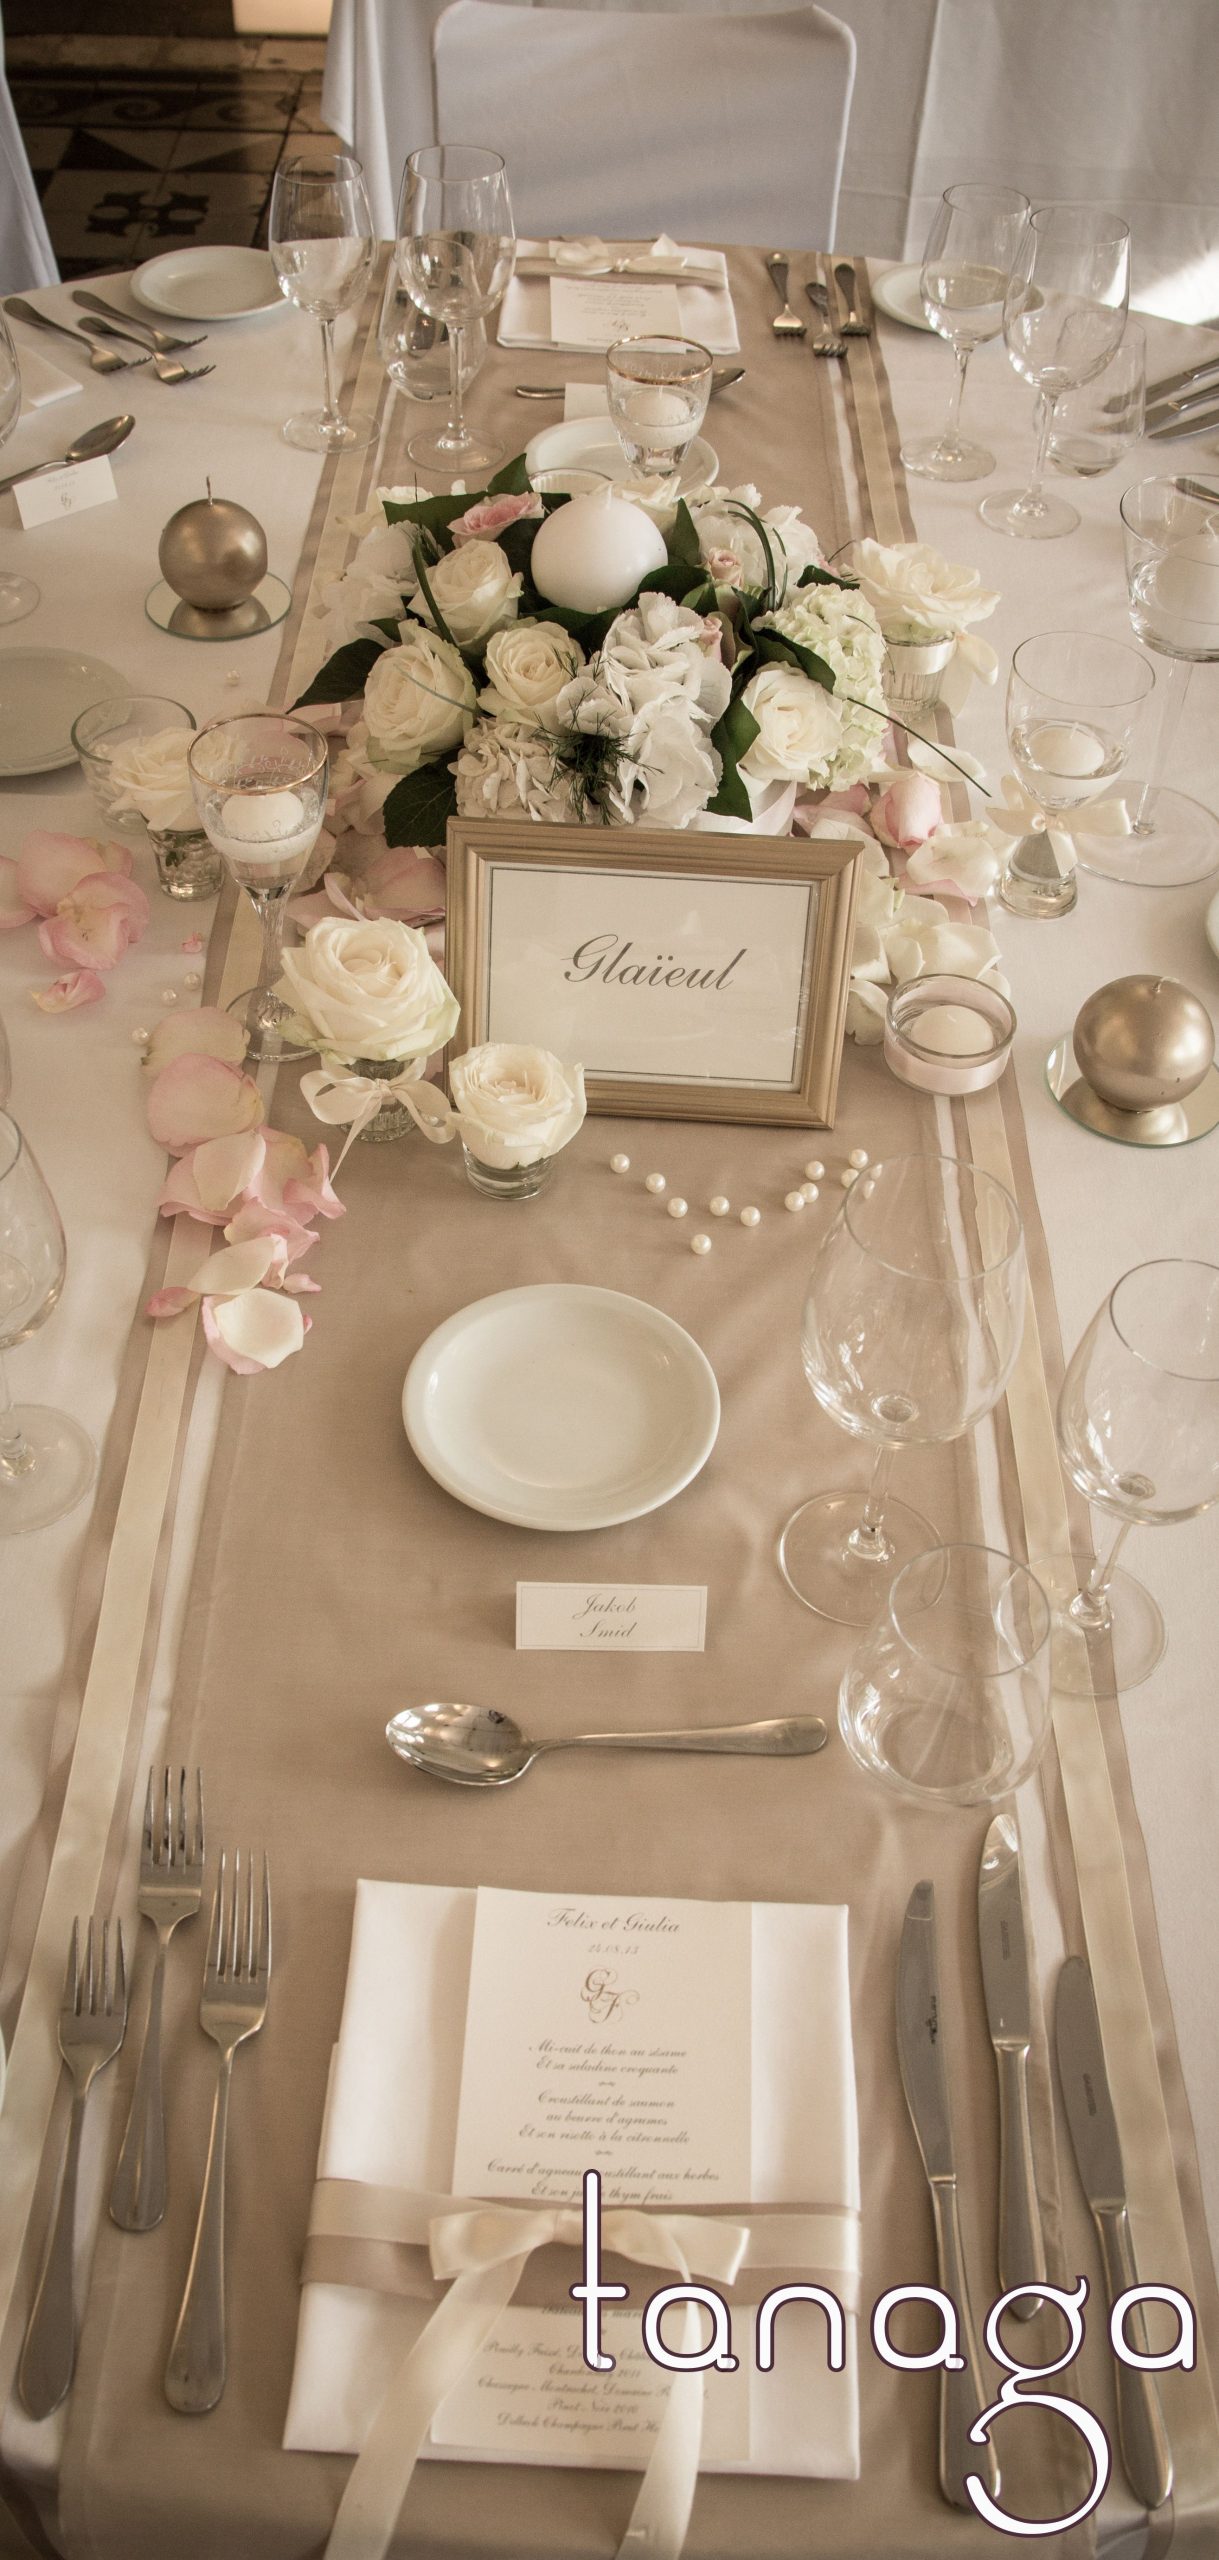 Décoration De #Table #Mariage Classico-Romantique, Rose ... destiné Decoration Interieure Salon Lors D'Un Mariage